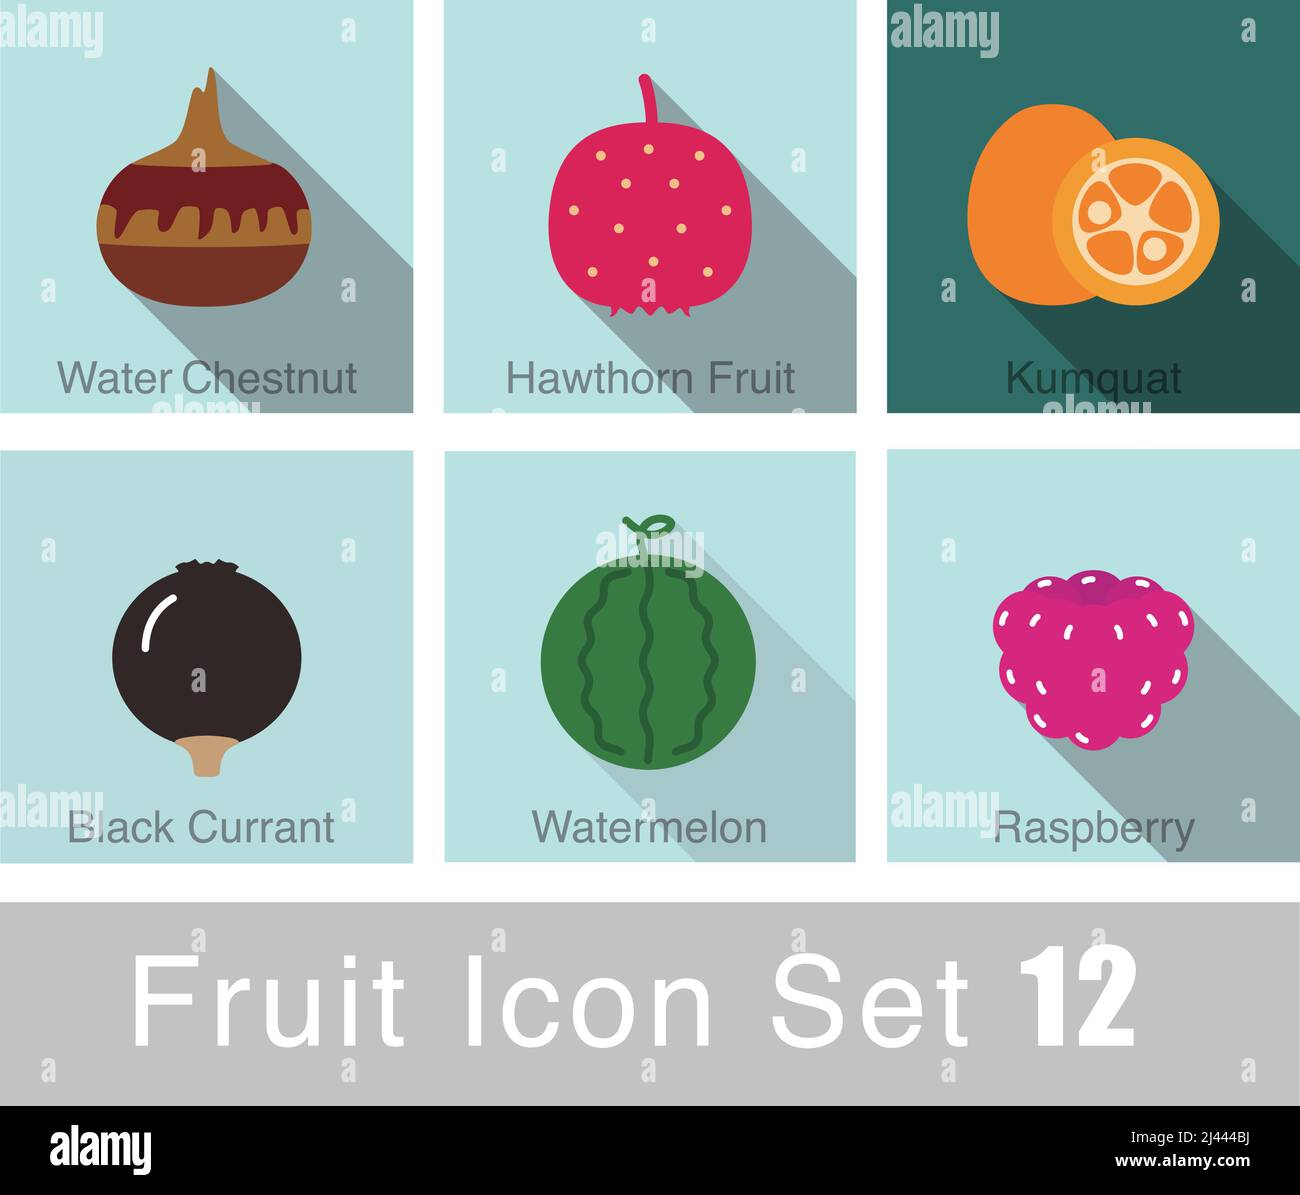 ensemble d'icônes de fruits, vecteur, tel que pastèque, framboise, fruits de l'aubépine, cassis, kumquat, châtaigne Illustration de Vecteur